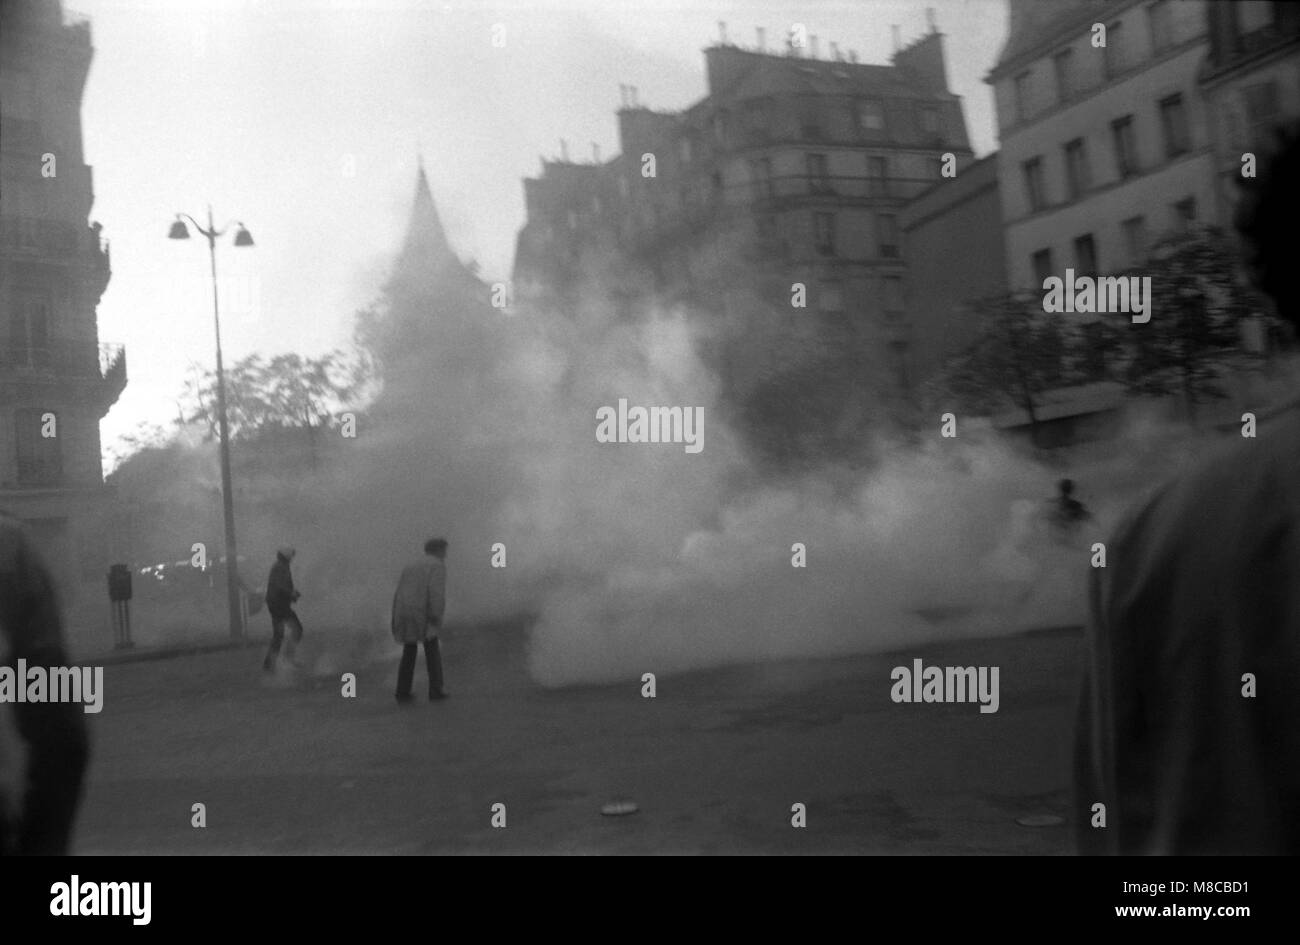 Philippe Gras / Le Pictorium -  May 1698 -  1968  -  France / Ile-de-France (region) / Paris  -  Tear gas against pavements in the streets of Paris Stock Photo